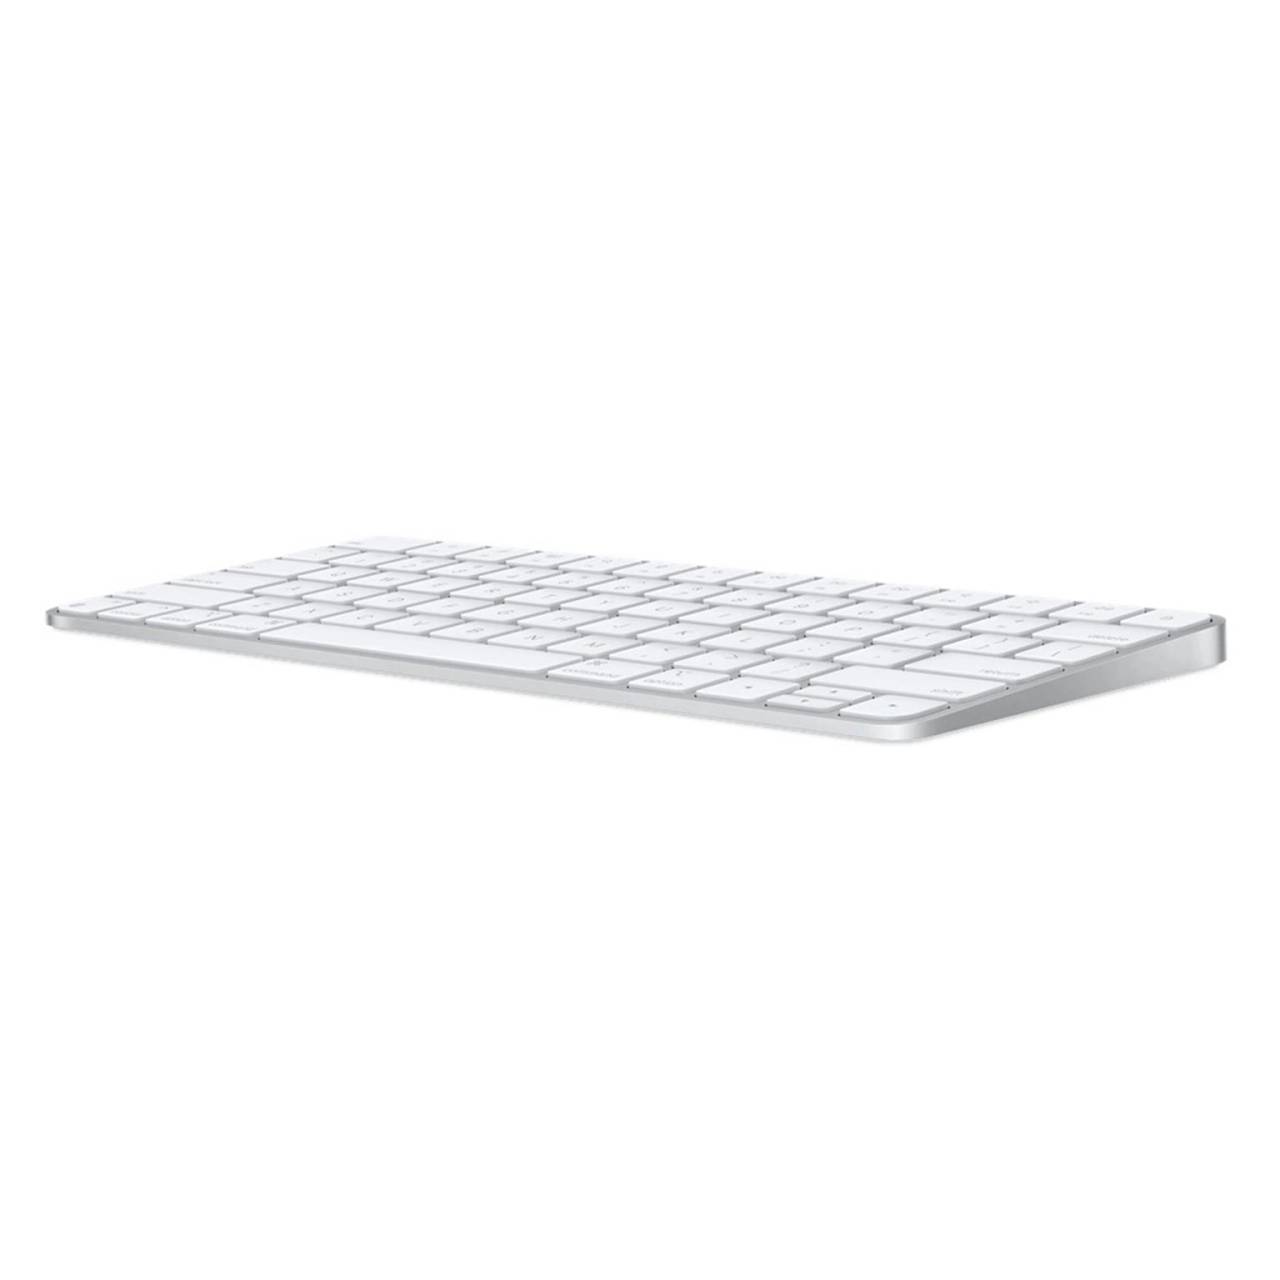 Apple Magic Keyboard – Funktastatur für Mac, Bluetooth Tastatur Apple, Magic Keyboard Akkulaufzeit